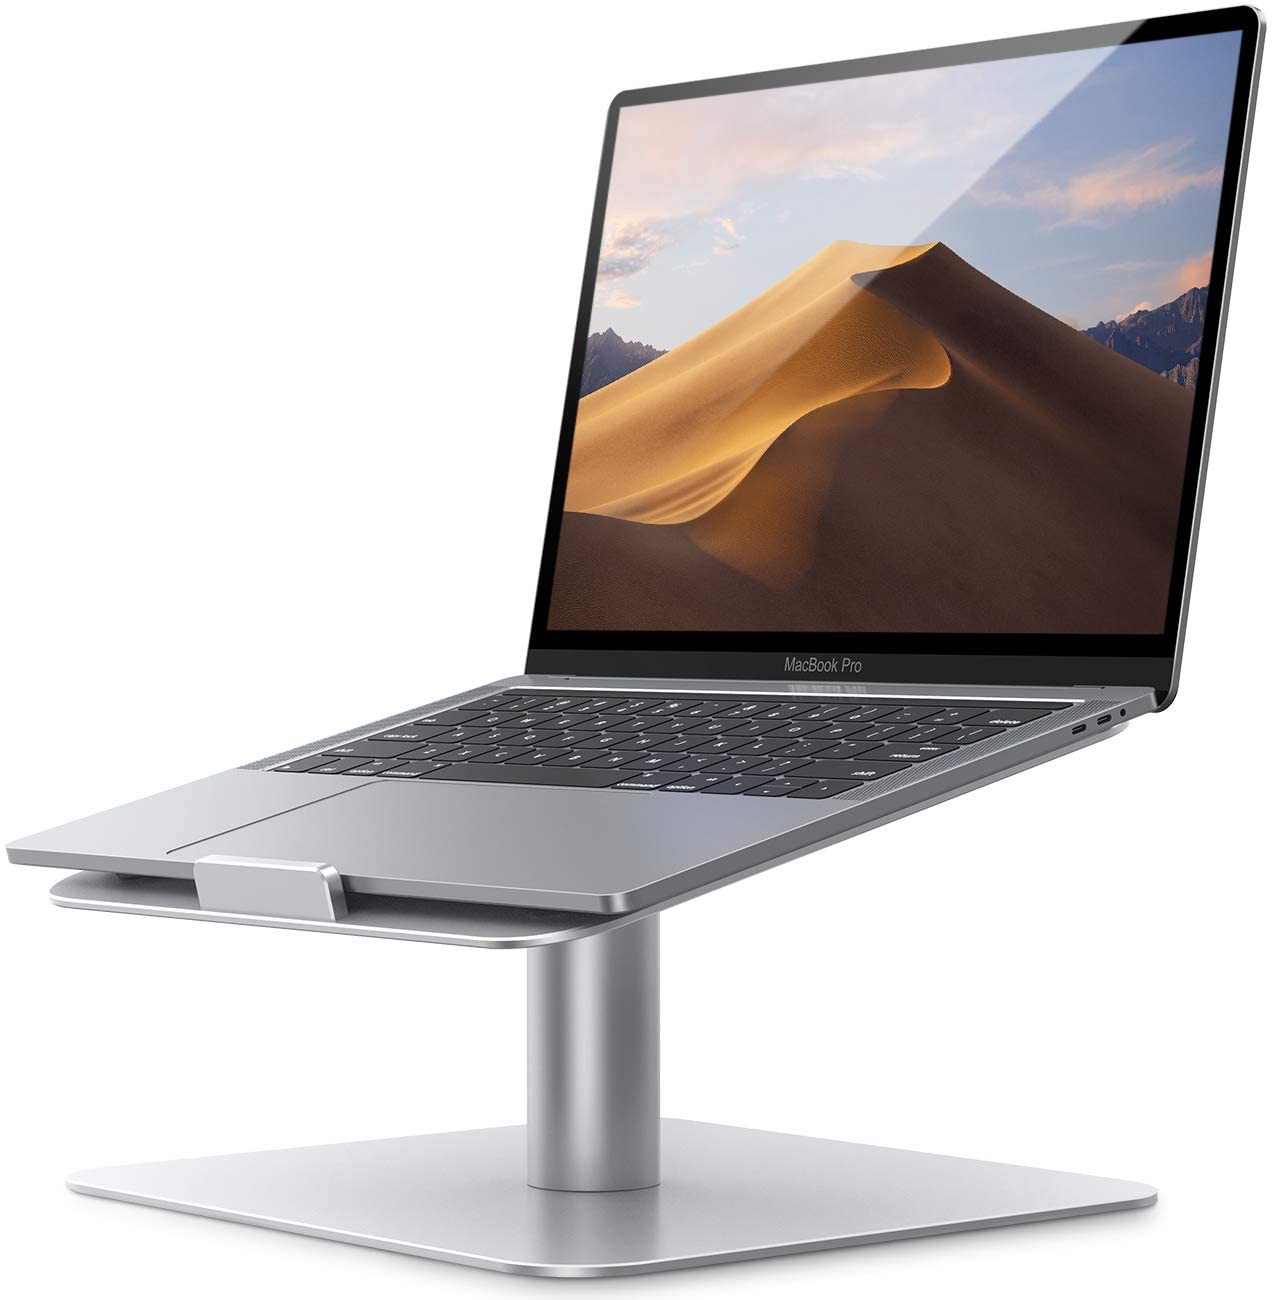 Soporte para Laptop Base Giratorio 360Compatible con Apple MacBook Air Pro DELL Asus XPS HP Galaxy Lenovo More 10 inch 17 inch computadoras Notebooks – Plata.